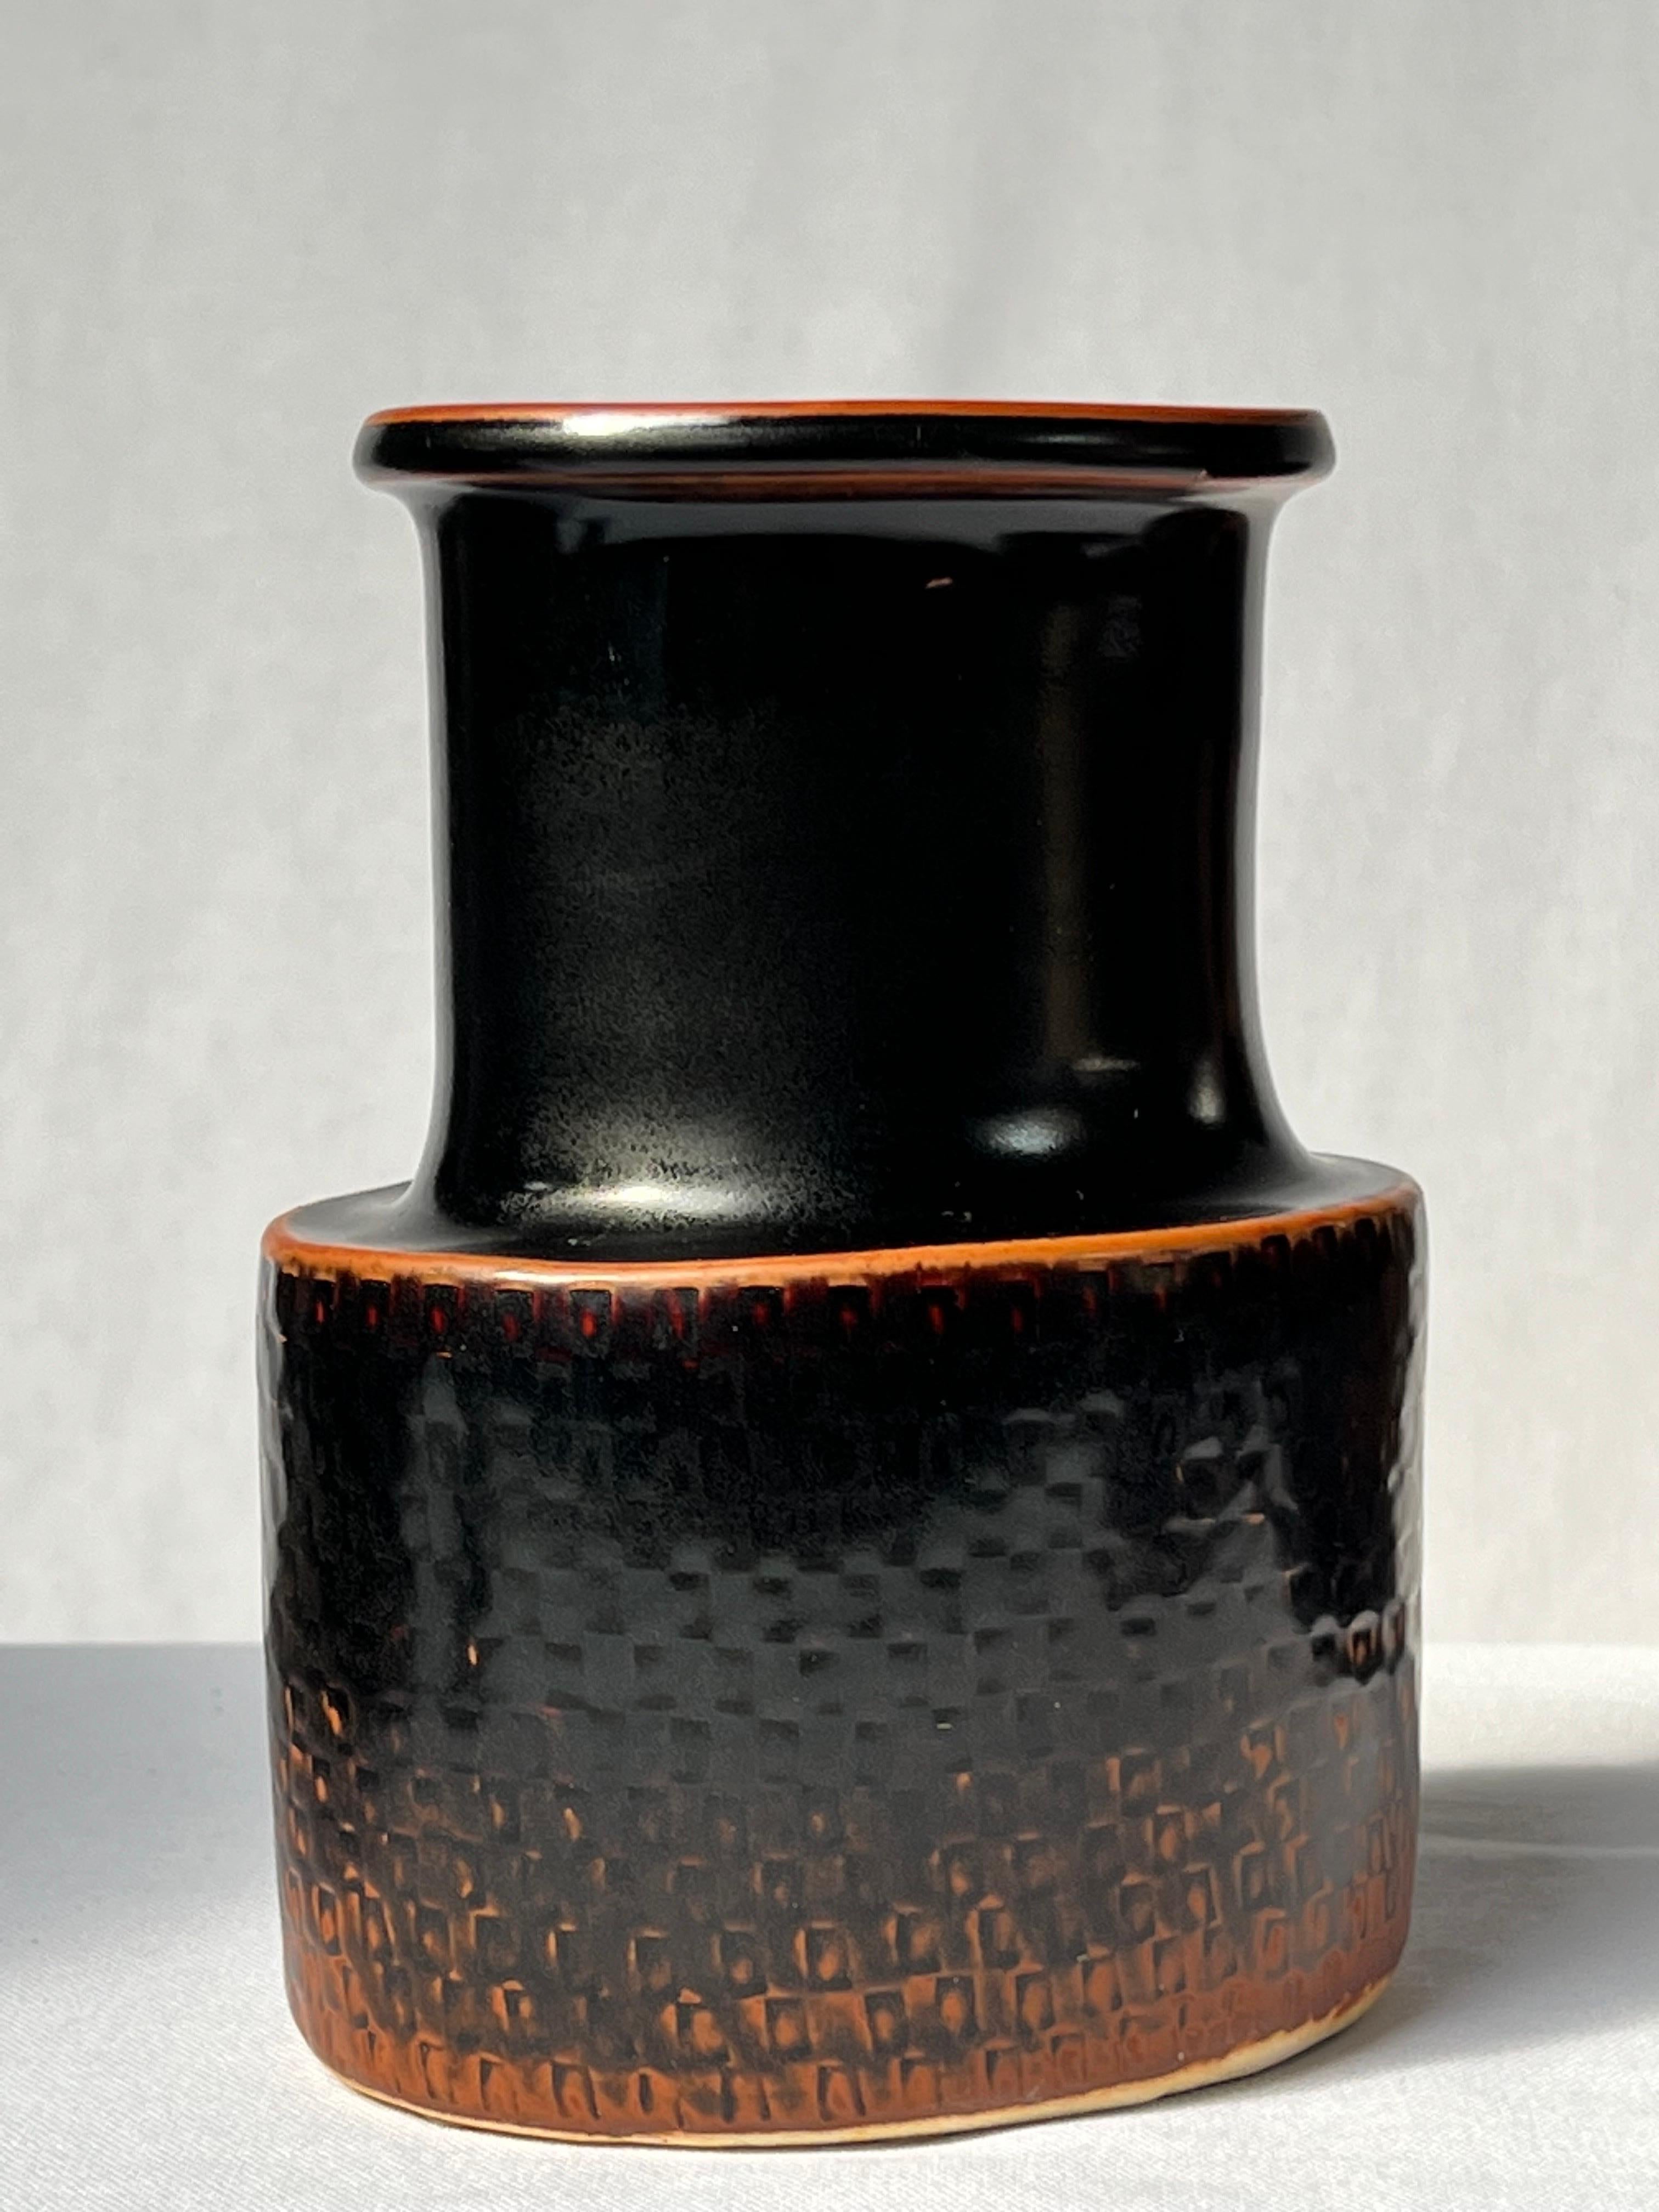 Scandinavian Modern Stig Lindberg Unique Vase in black Glaze Tenmoku Made by Hand Sweden 1970 For Sale